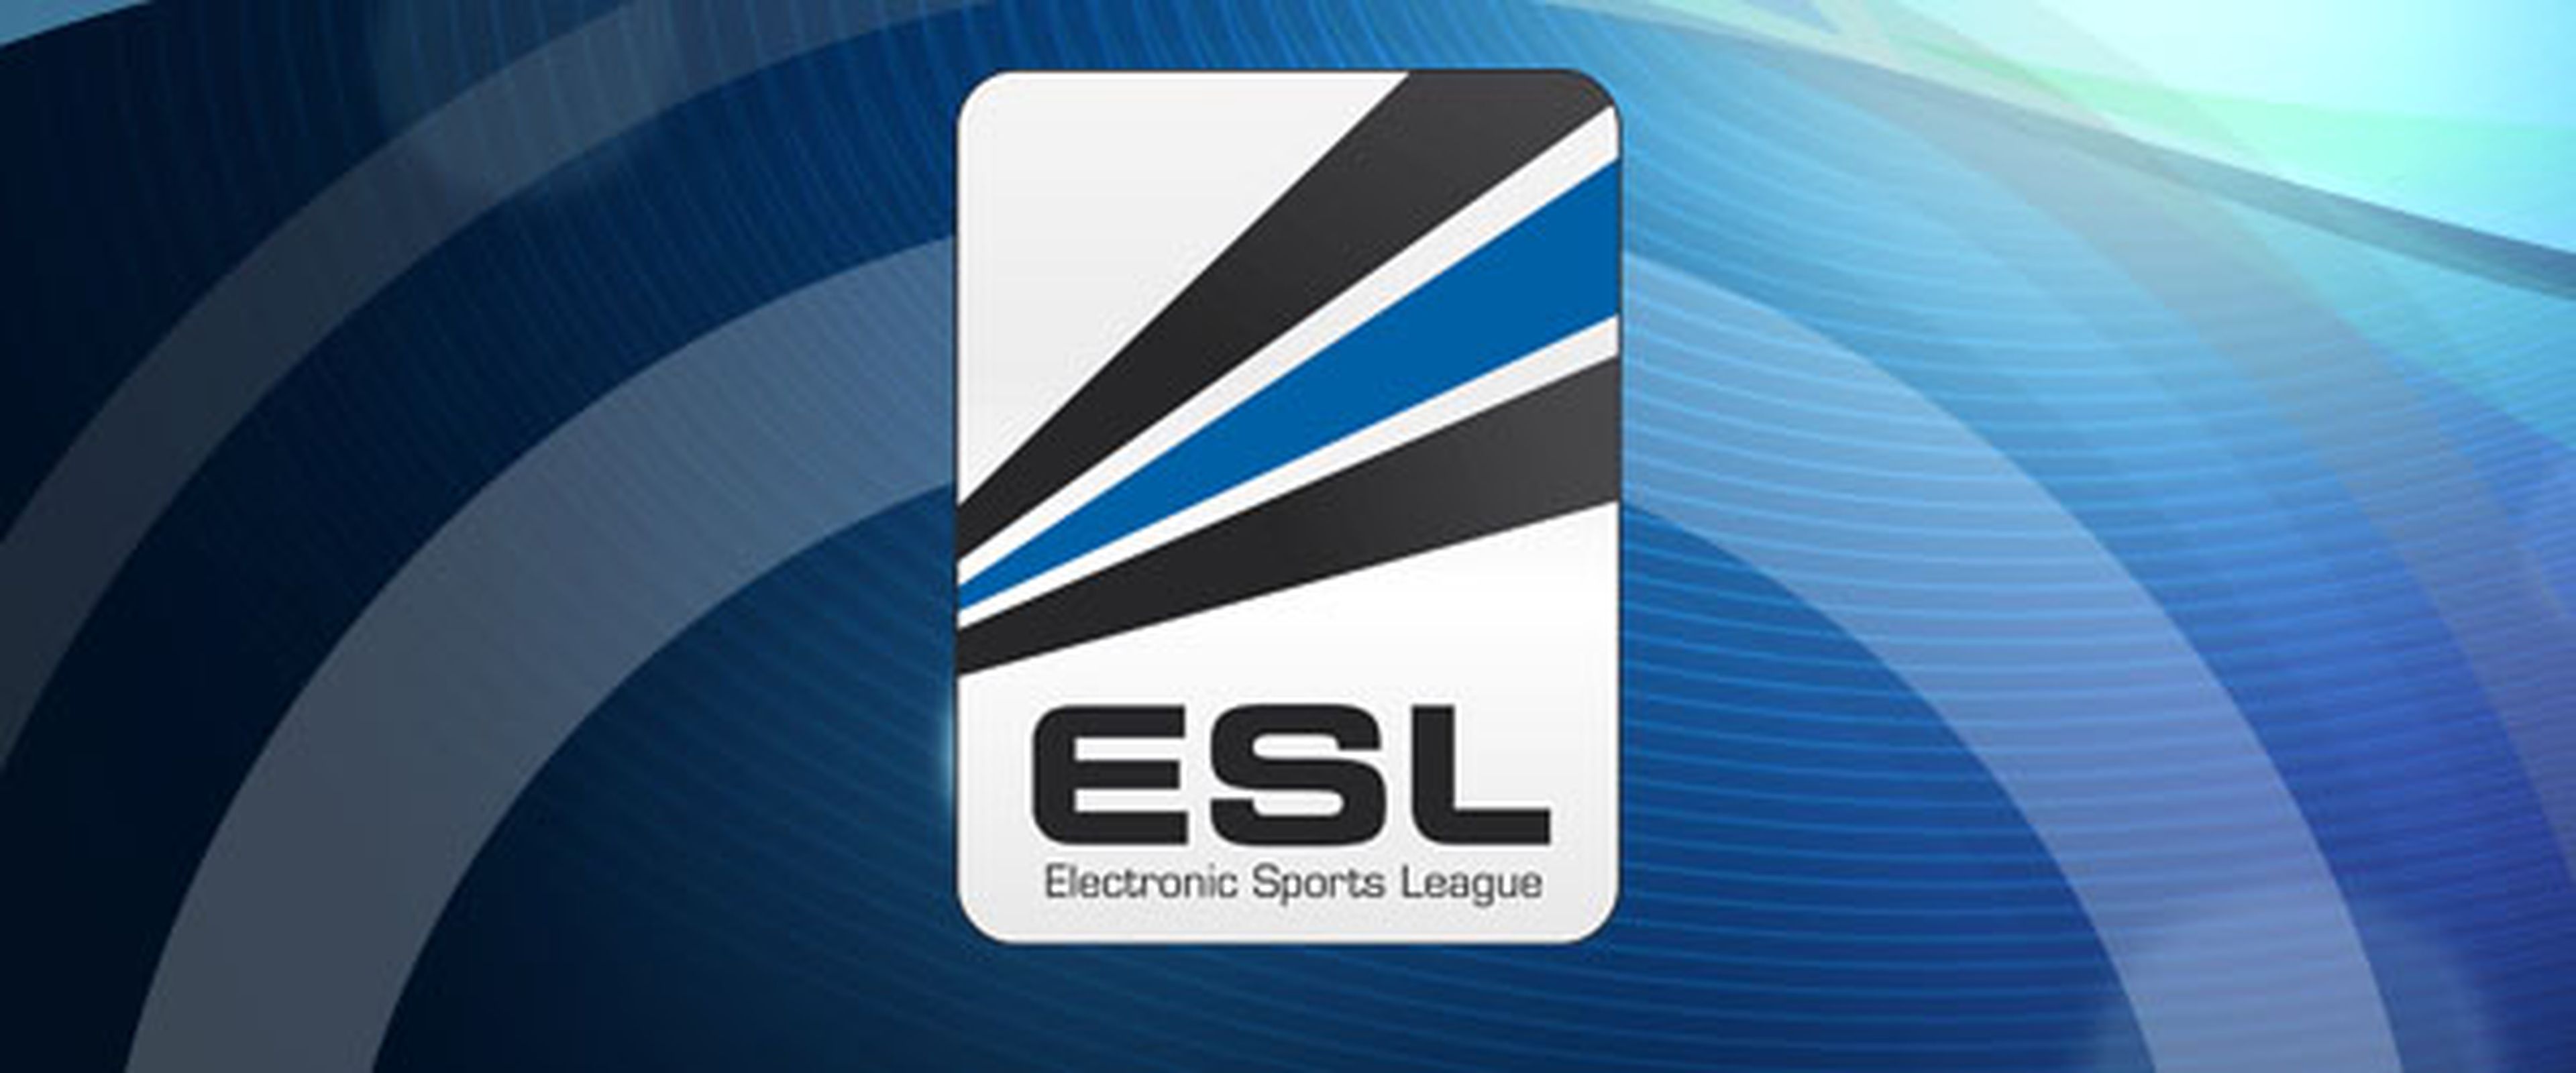 Agenda ESL eSports del 17 al 23 de enero